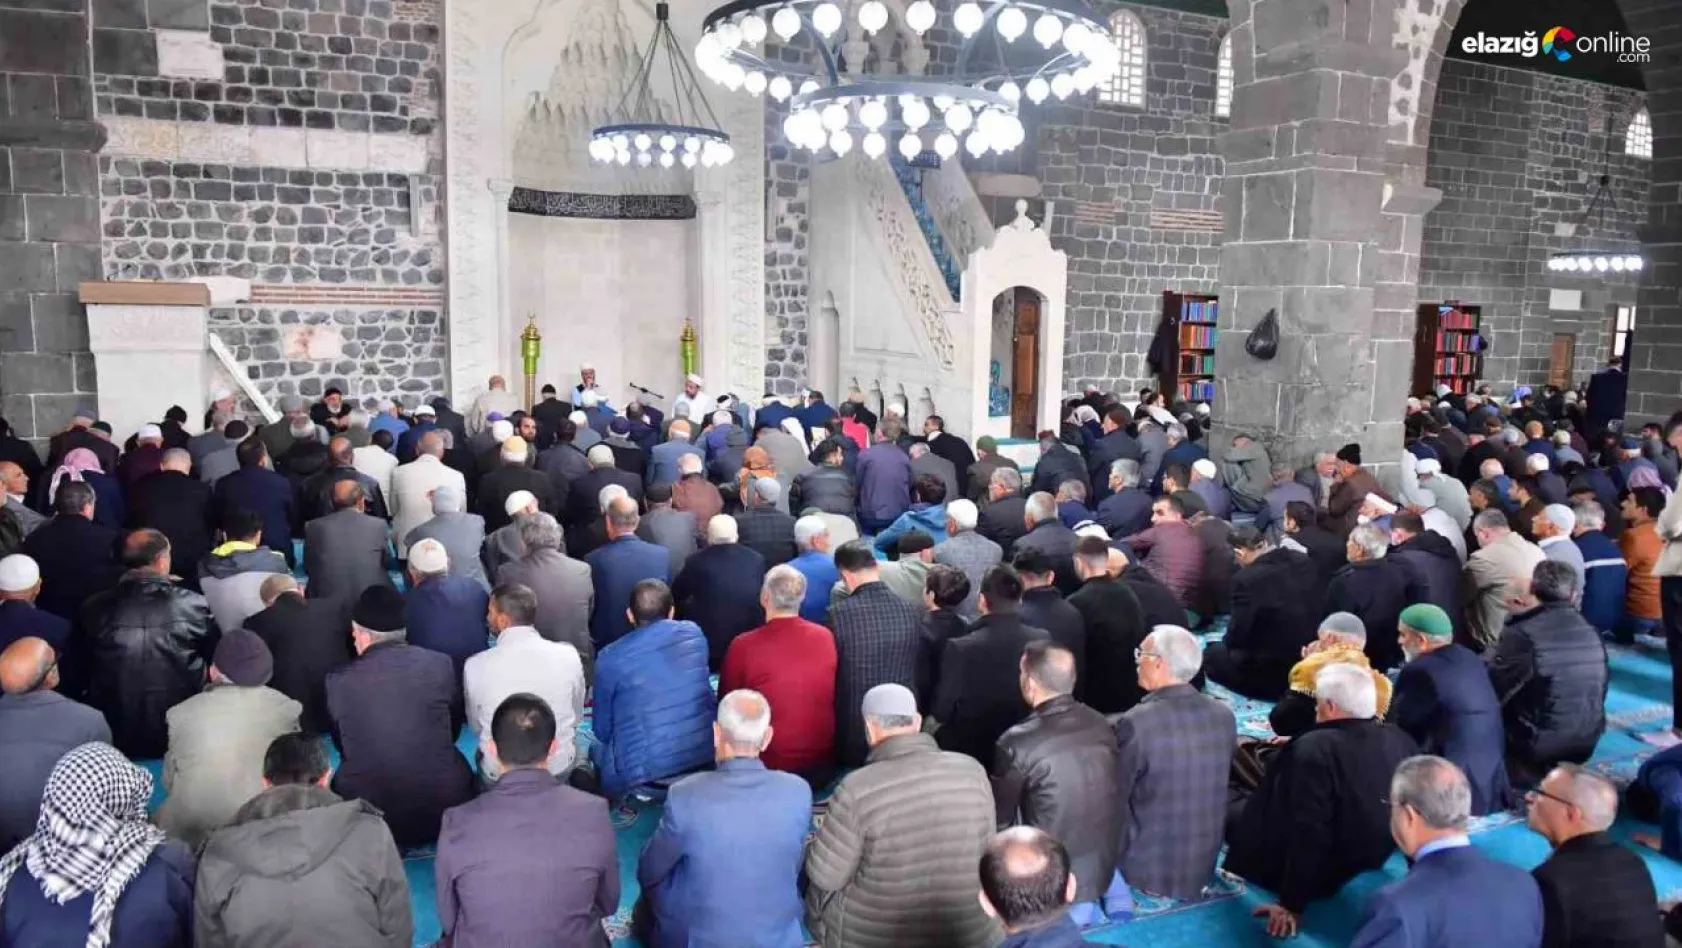 Çanakkale Şehitleri için Diyarbakır'da Mevlit okutuldu